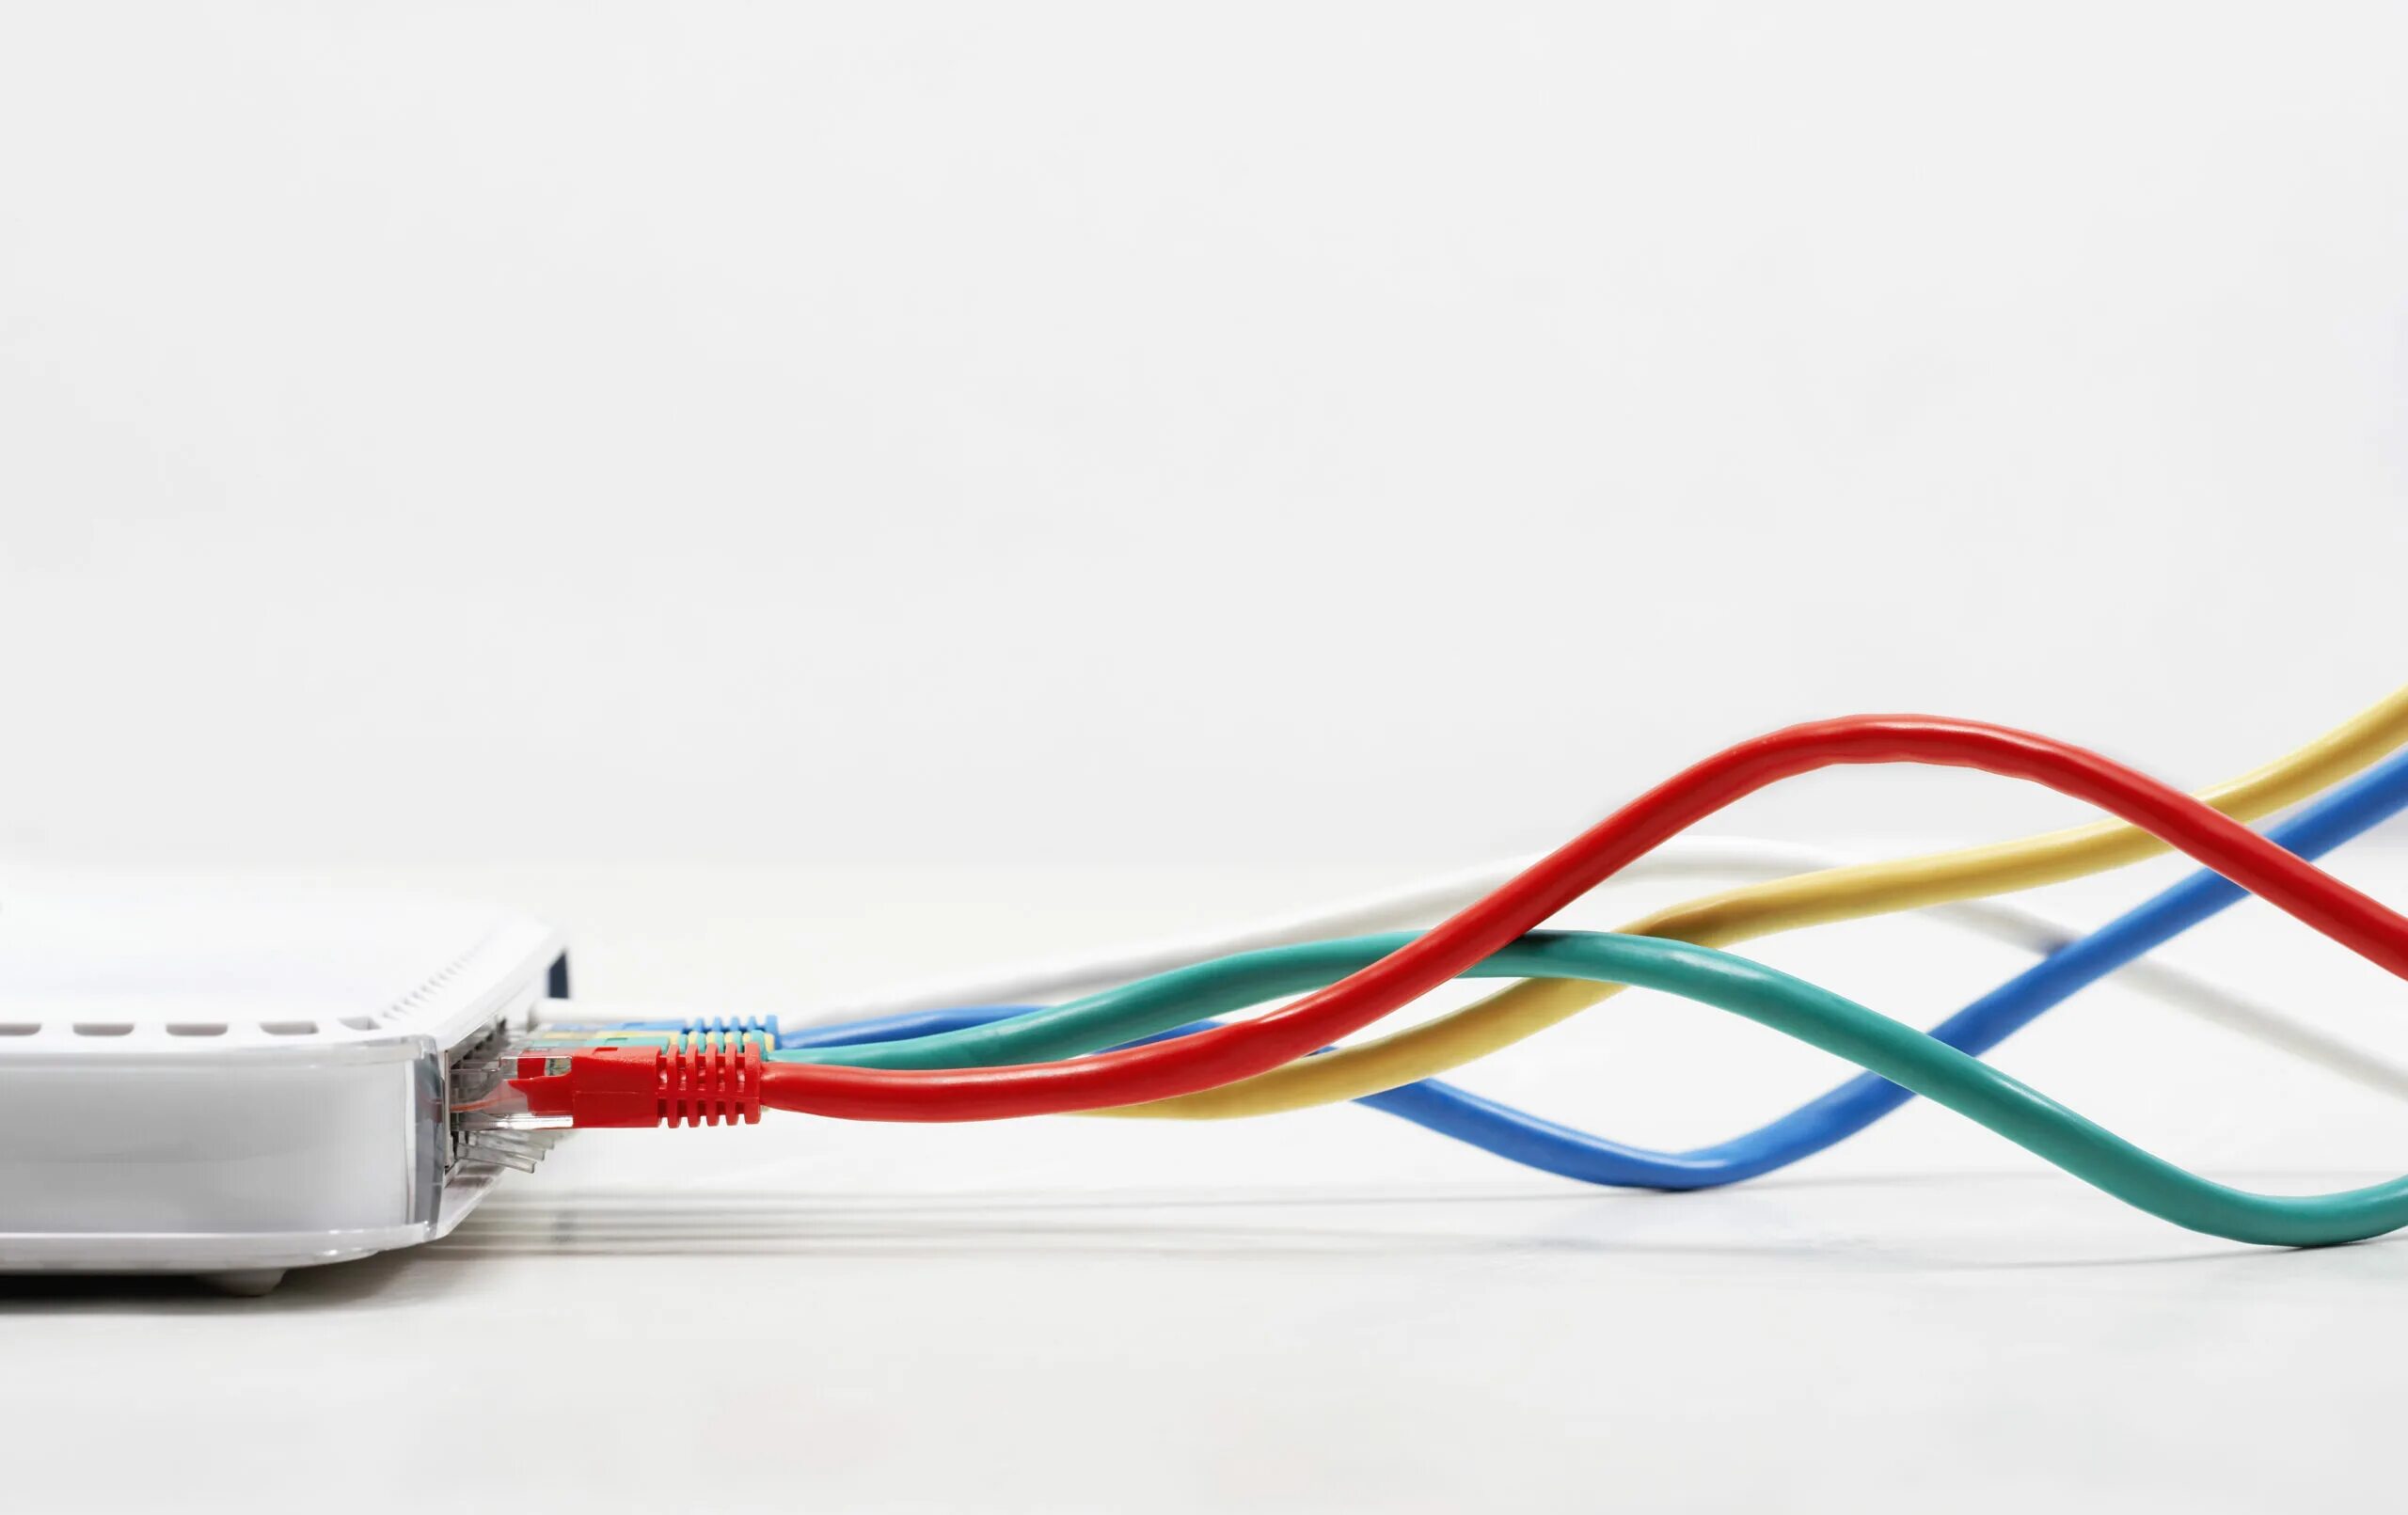 Купить подключение к интернету. Интернет кабель. Ethernet кабель. Интернет кабель на прозрачном фоне. Кабель на белом фоне.